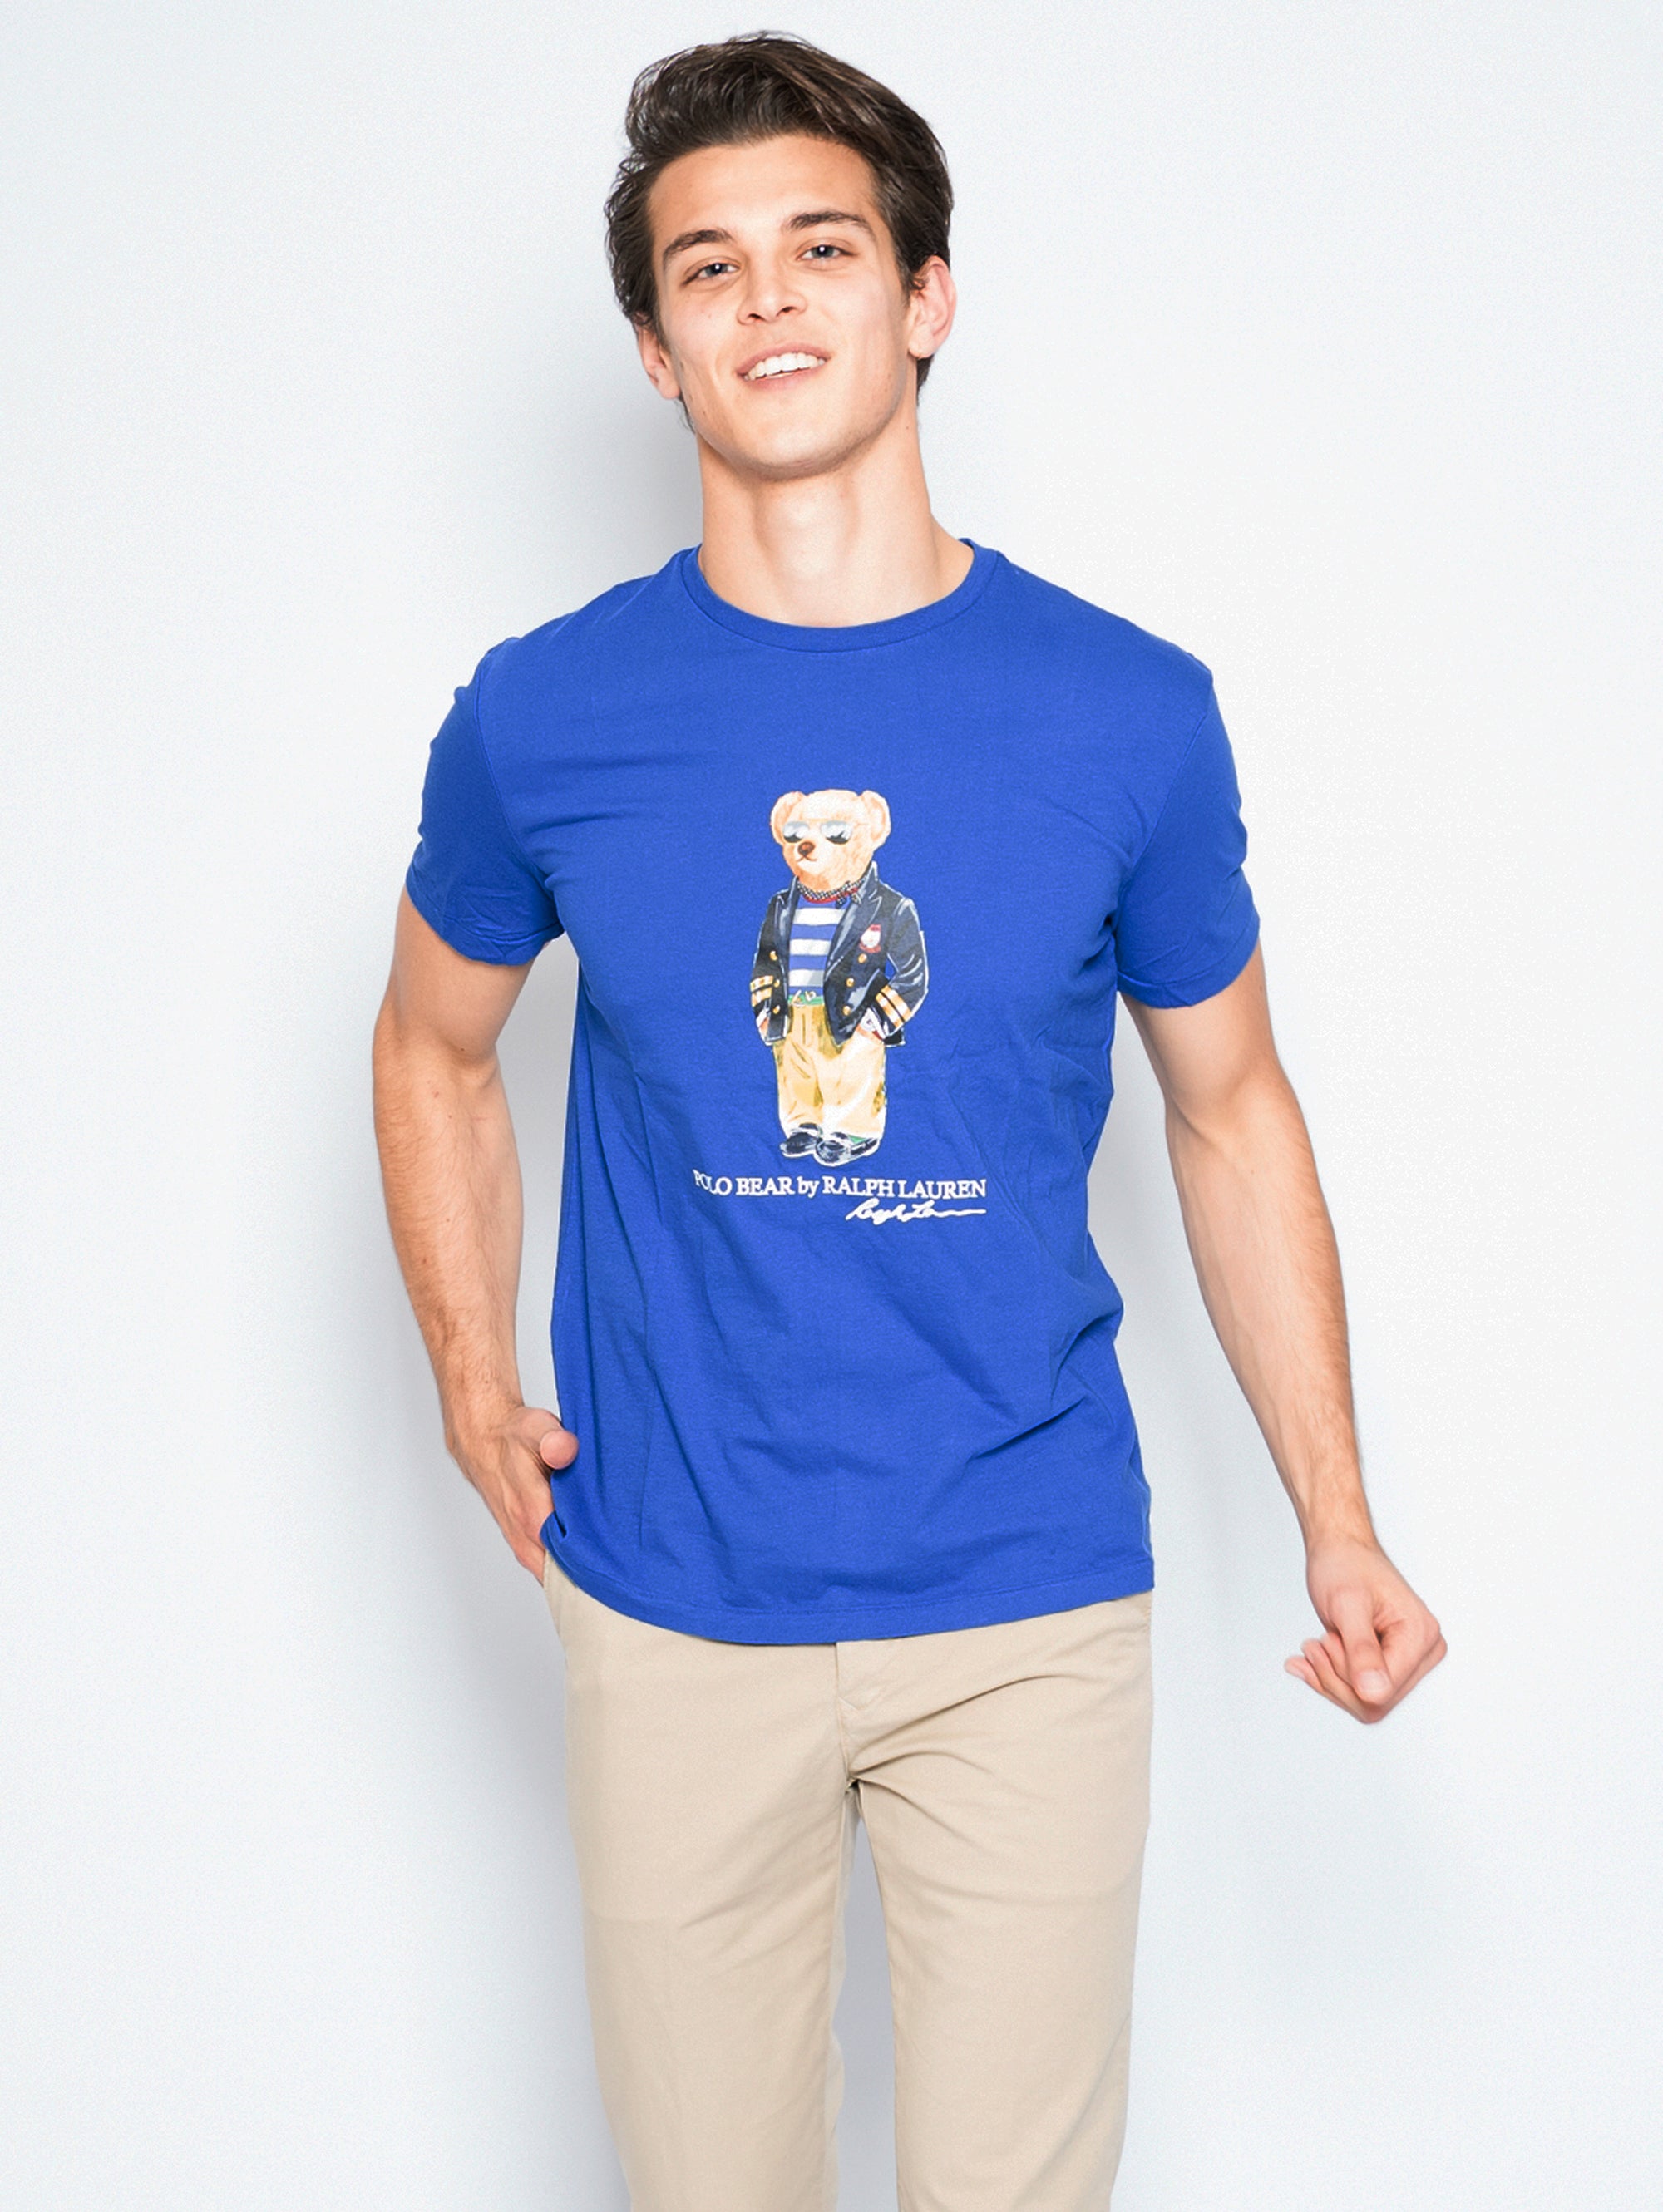 RALPH LAUREN-T-shirt Teddy Bear Blu-TRYME Shop